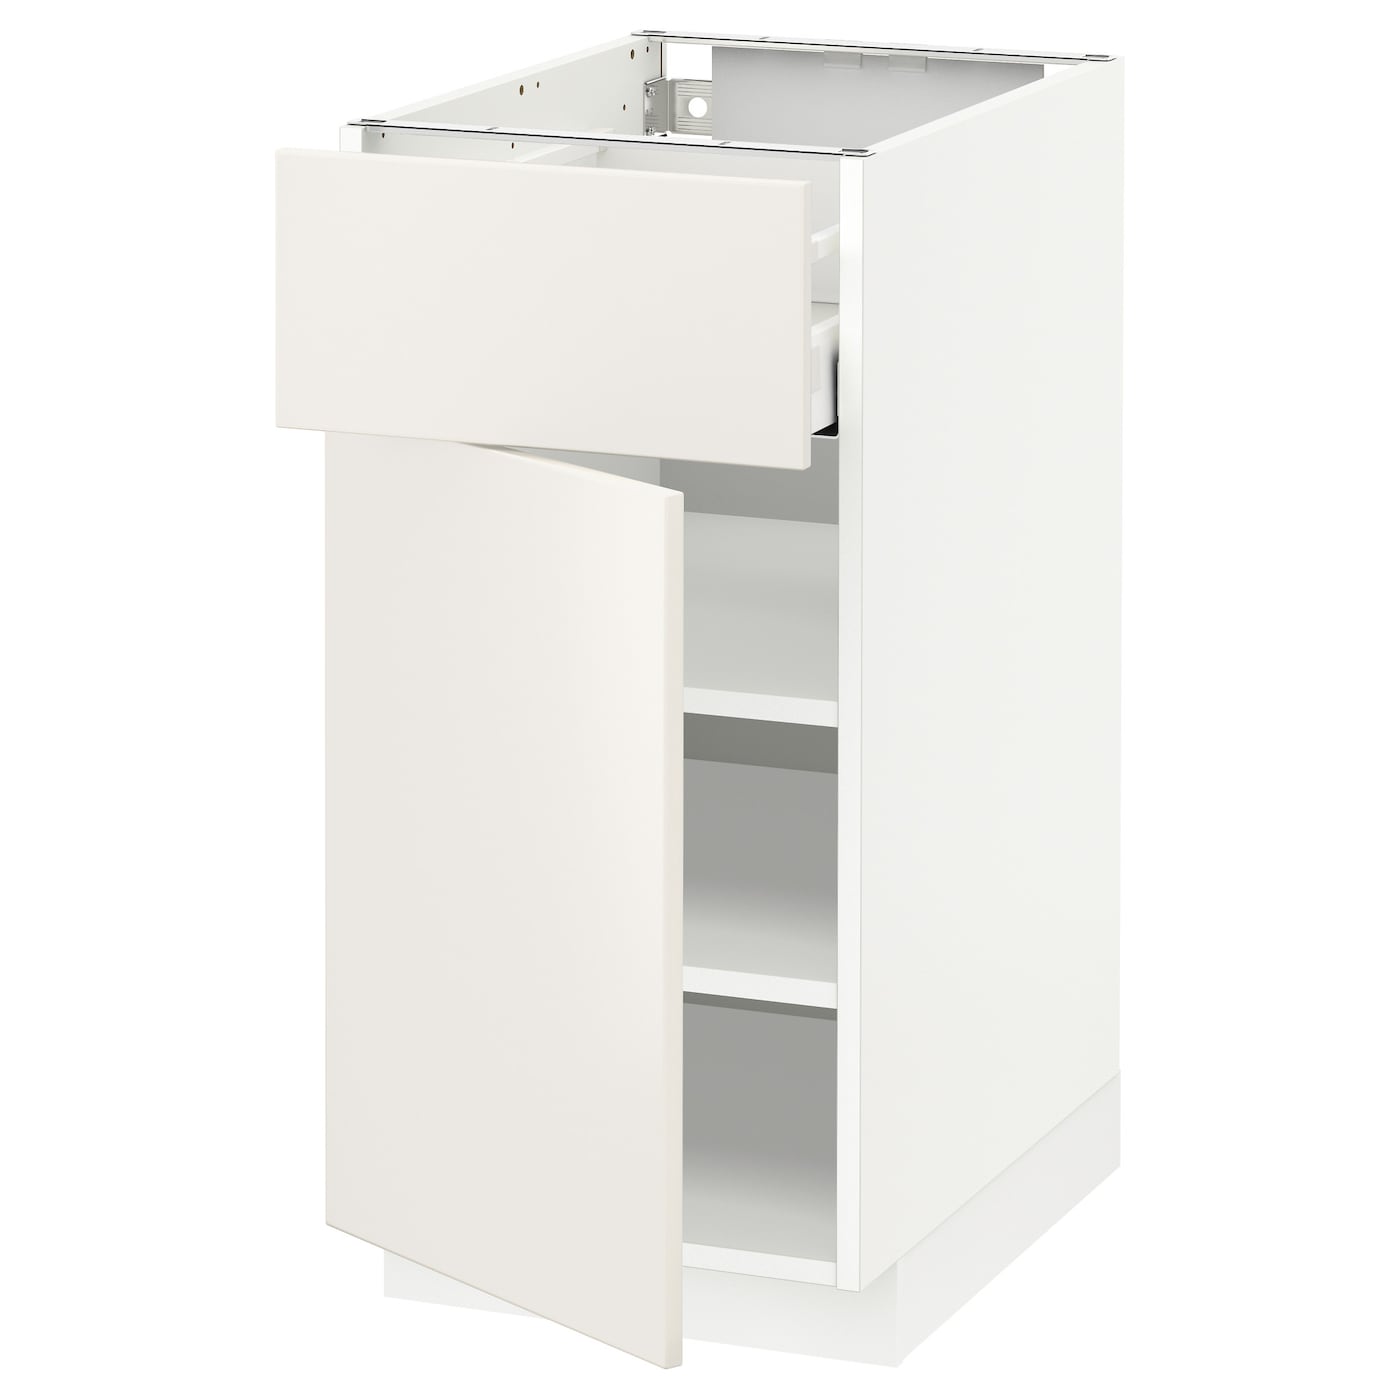 Напольный шкаф - IKEA METOD MAXIMERA, 88x62x40см, белый, МЕТОД МАКСИМЕРА ИКЕА